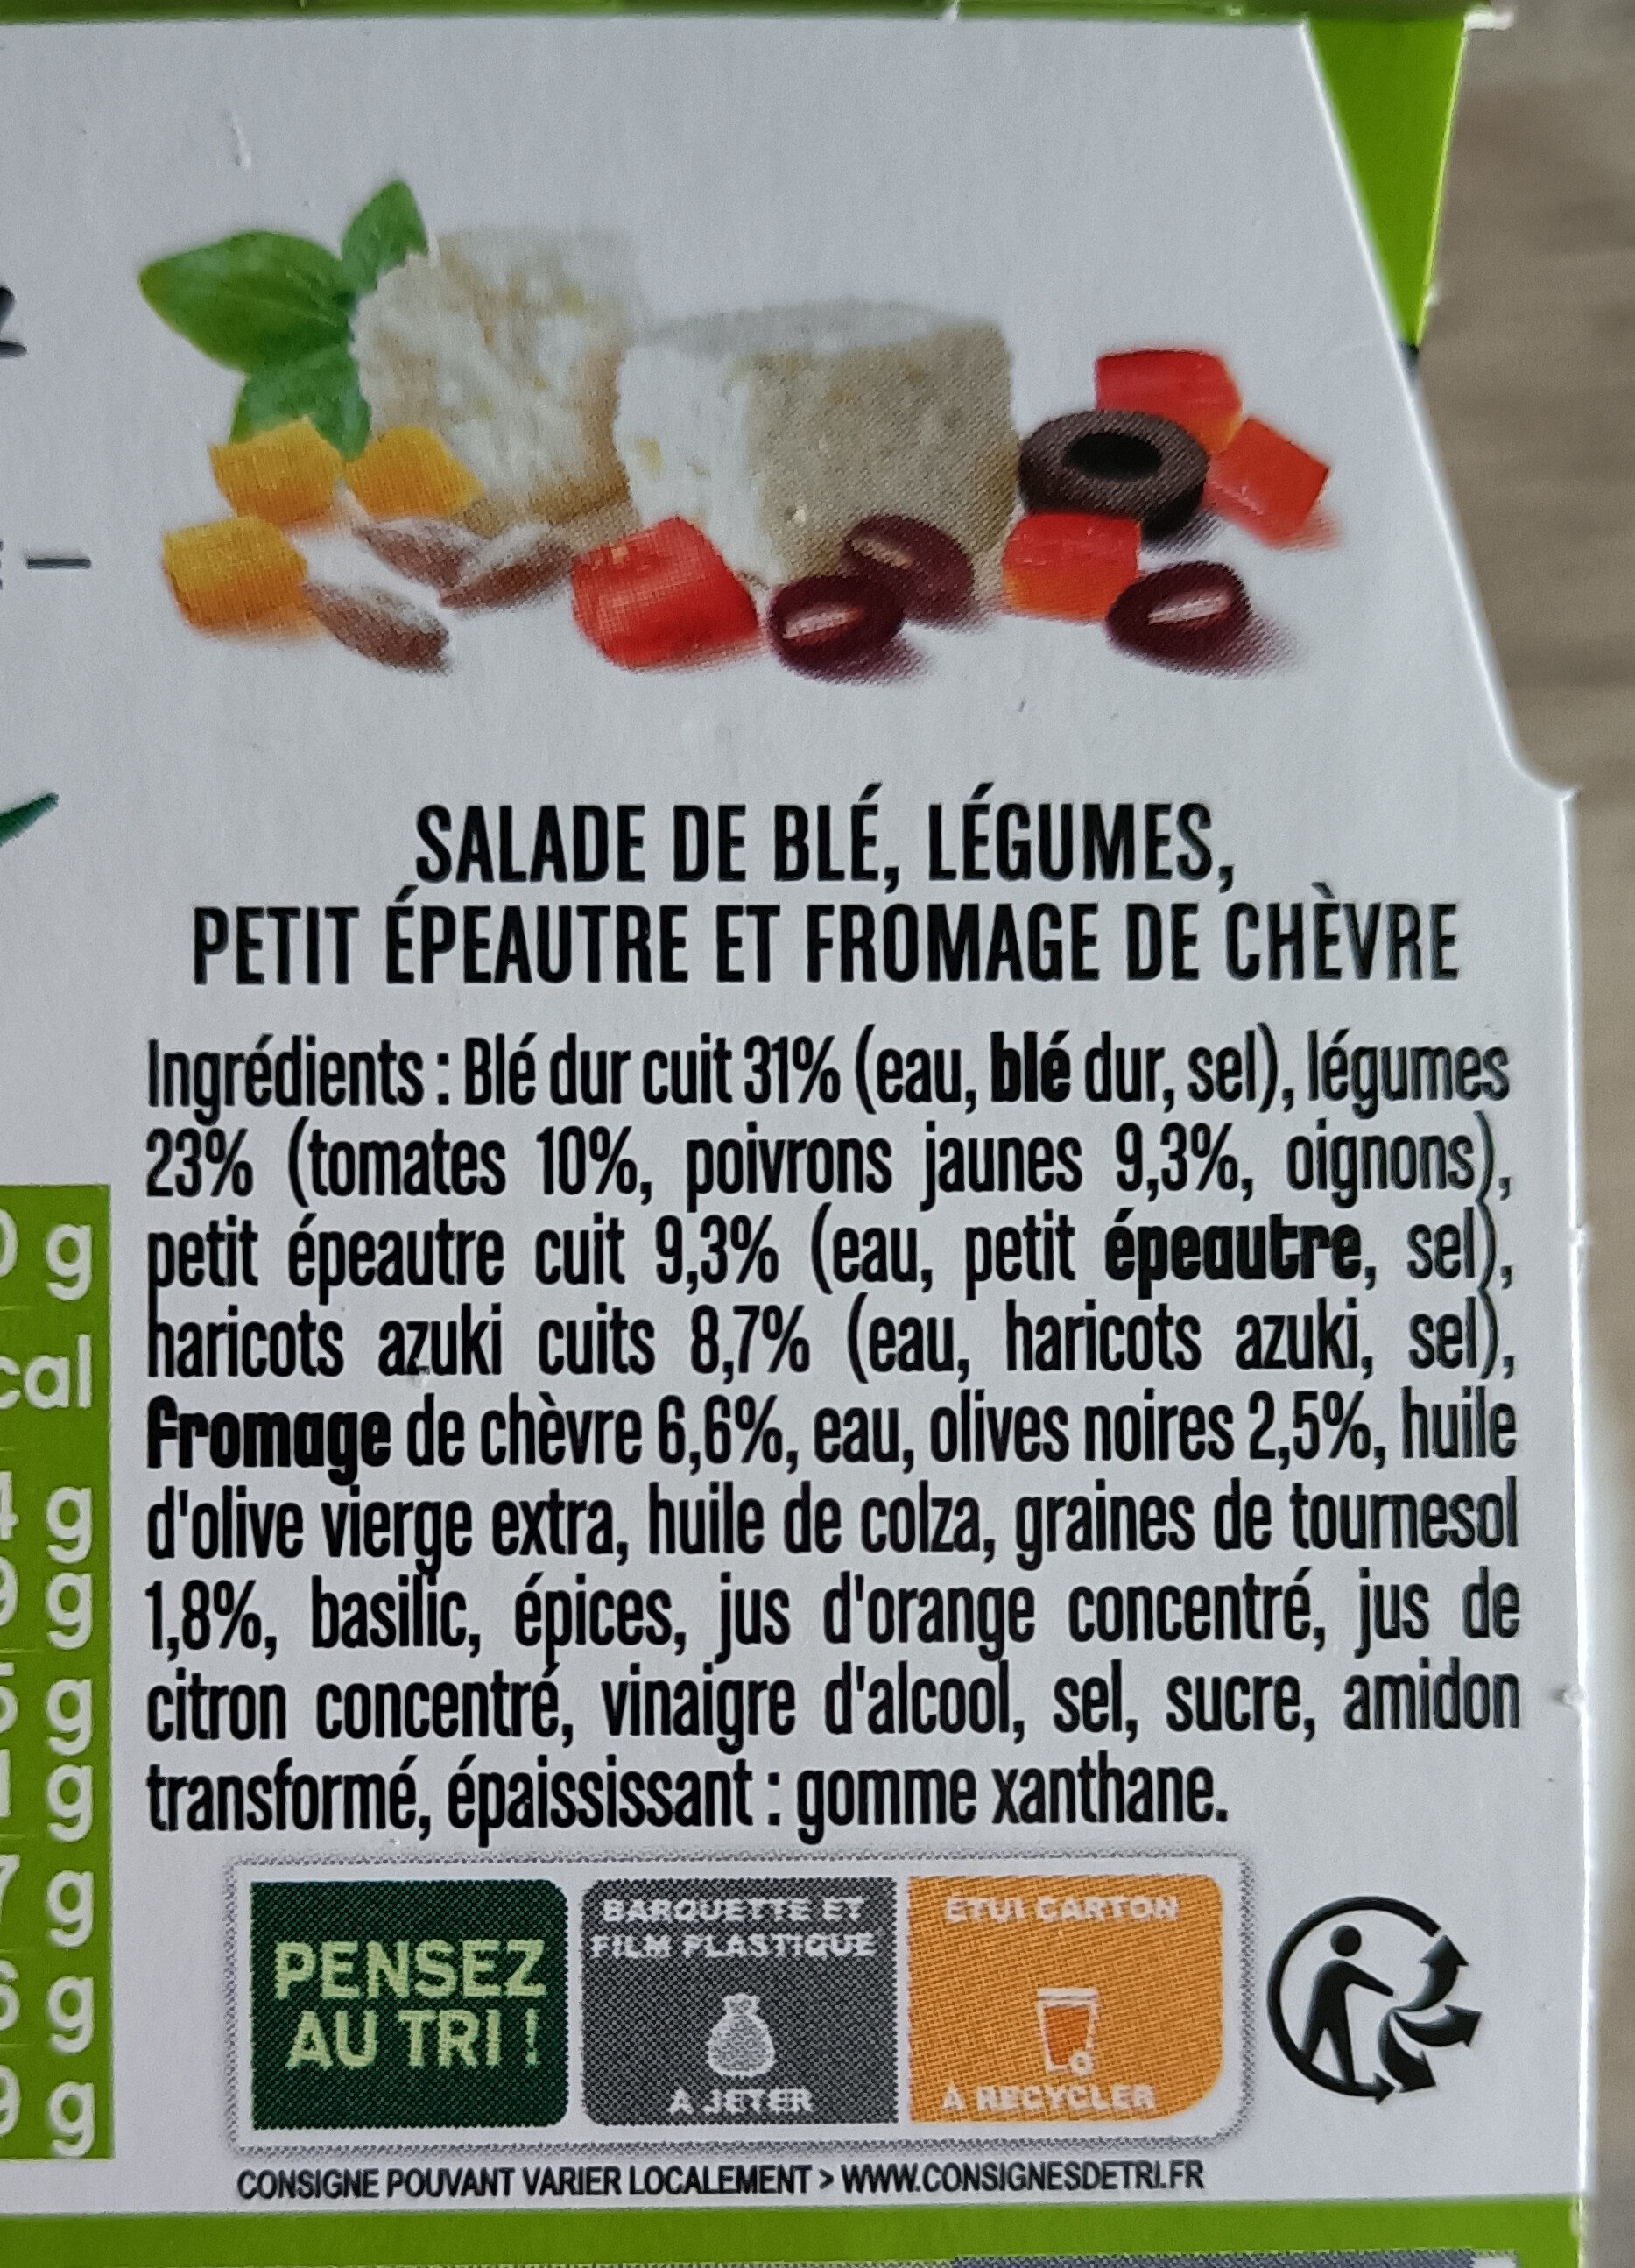 Veggie blé & petit épeautre chèvre - Ingredients - fr